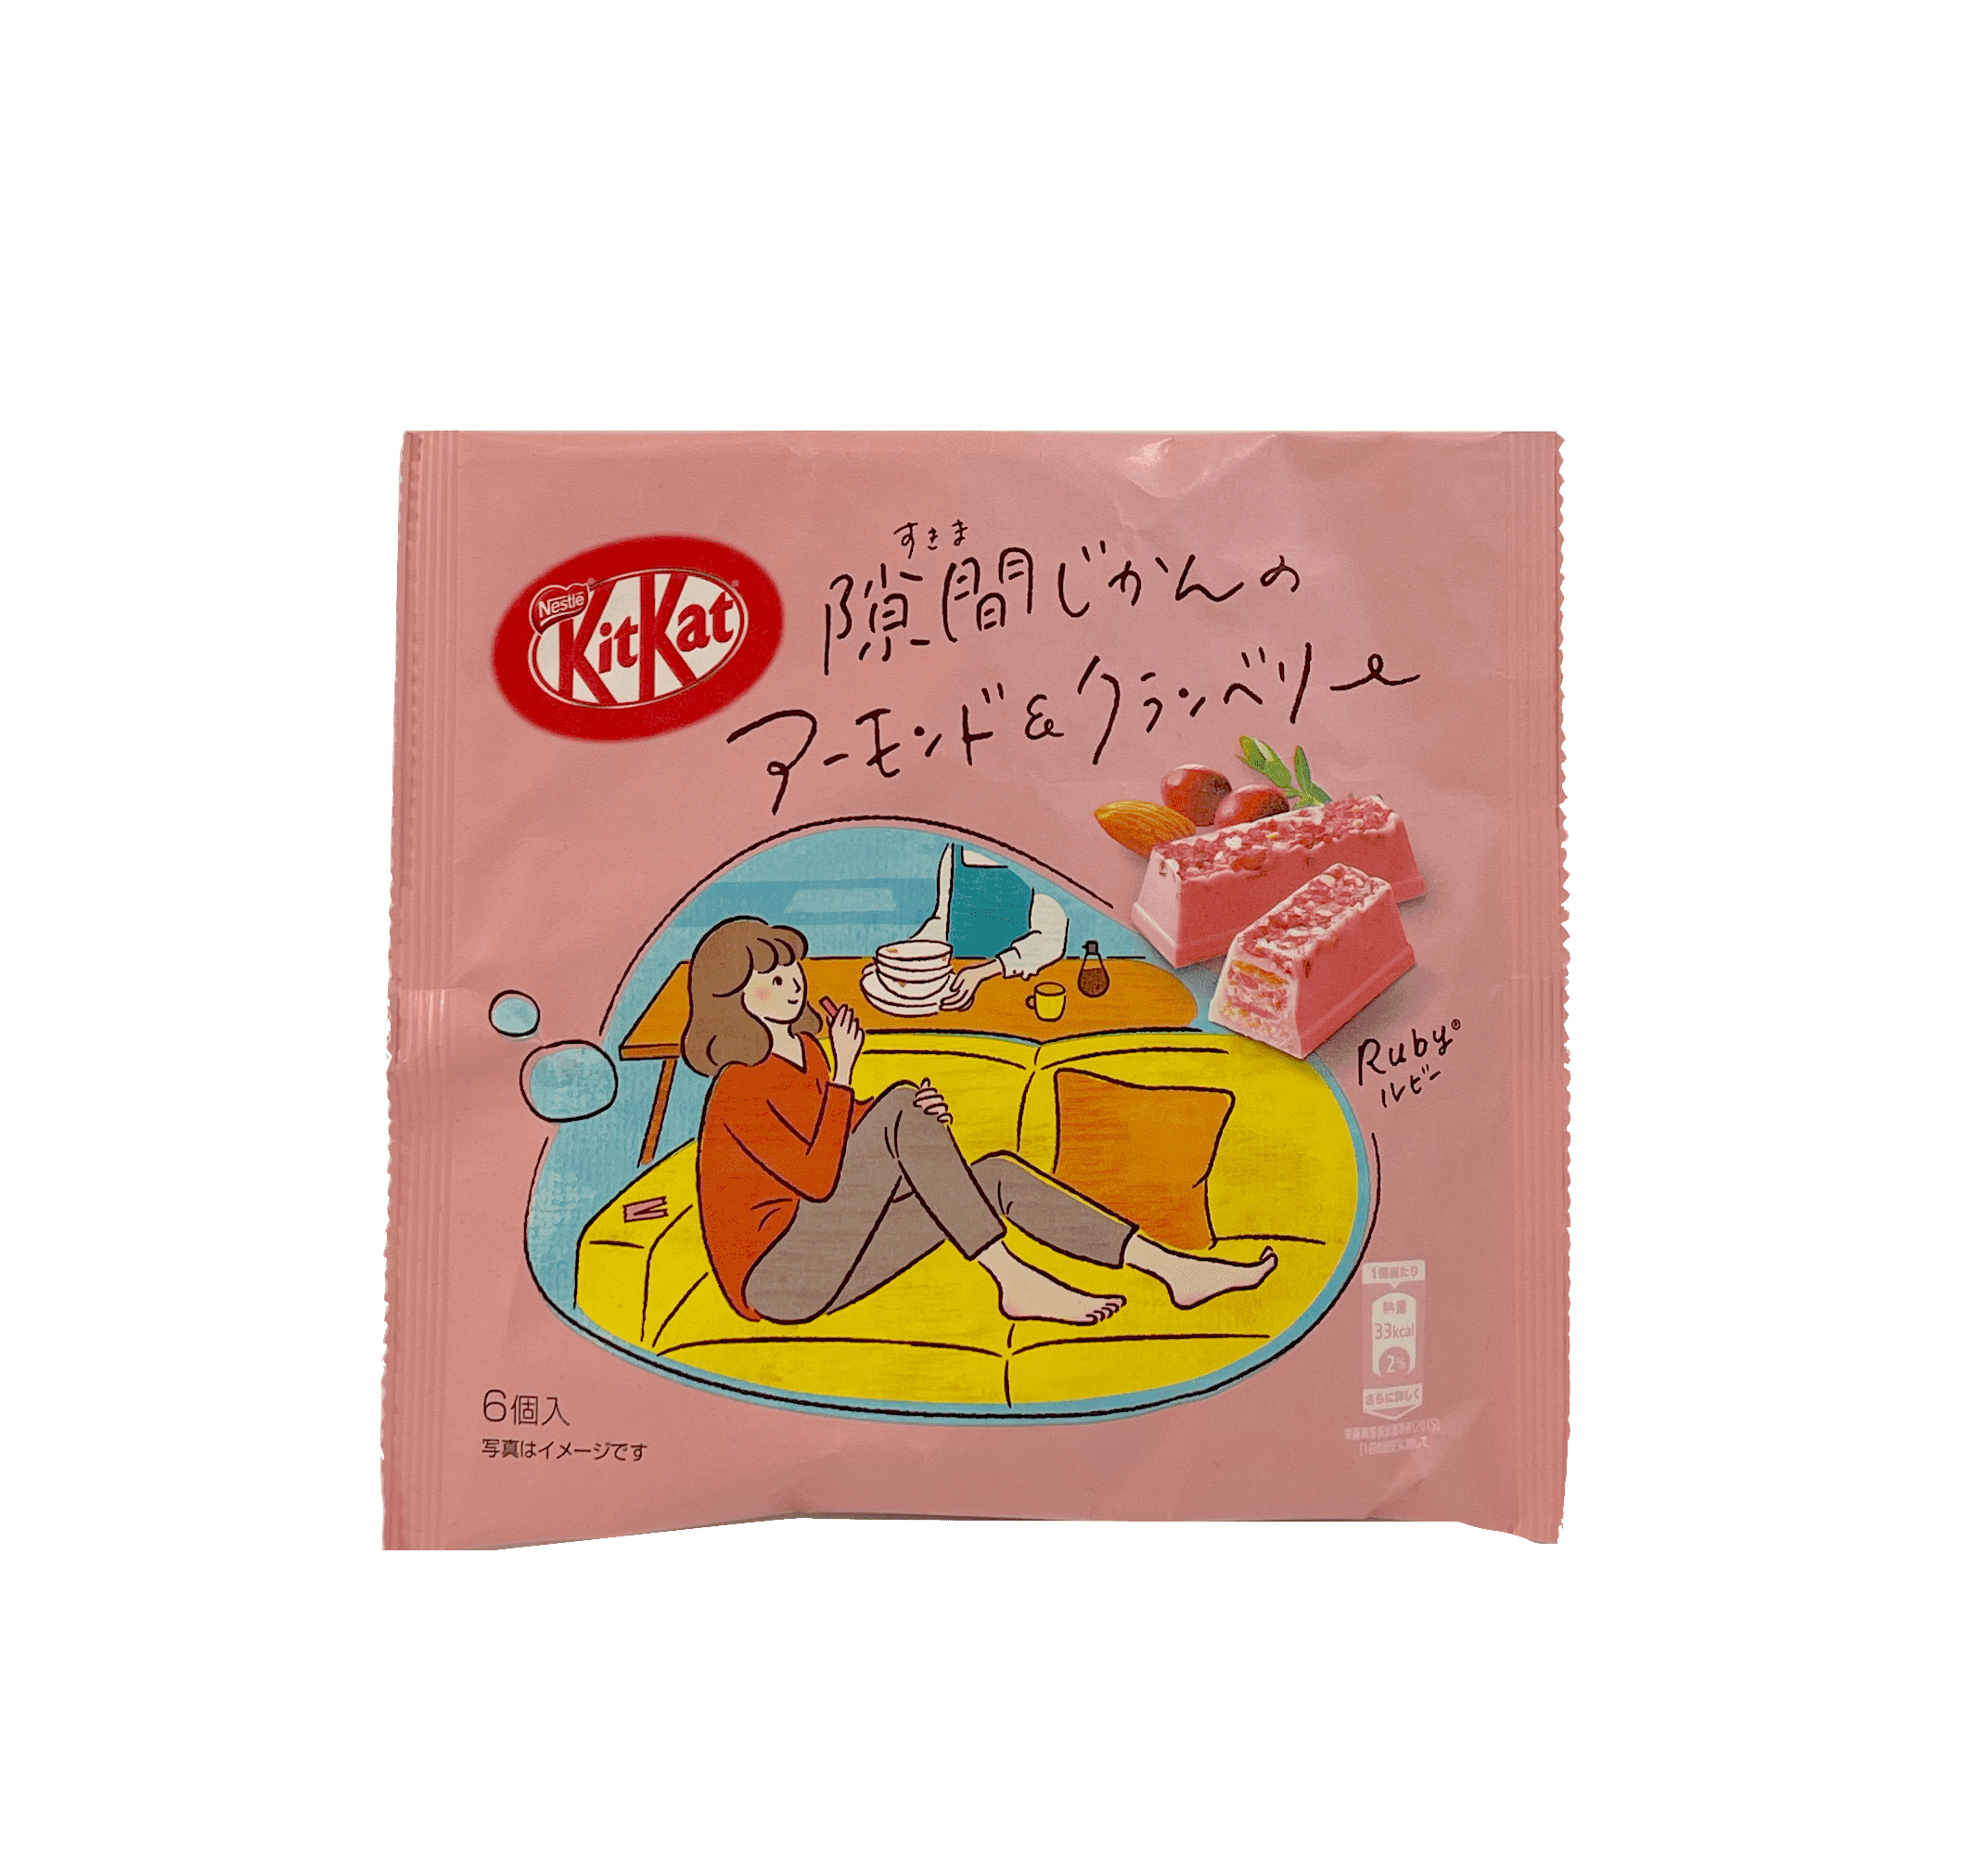 KitKat Mandel/Tranbär Ruby Smak 36,6g Japan